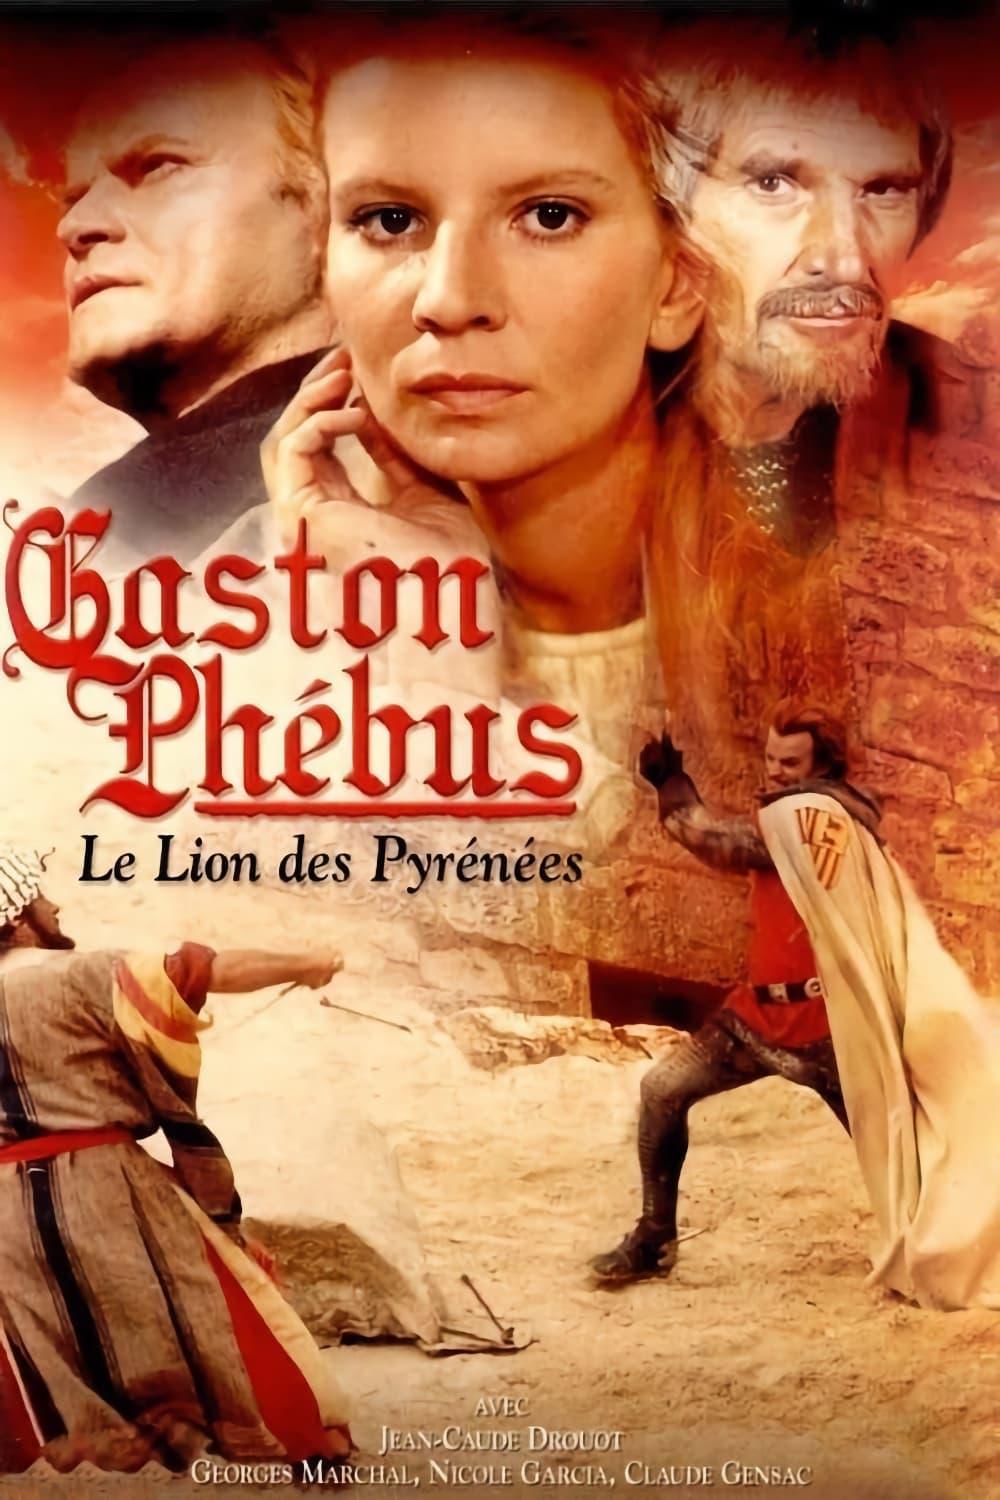 Affiche de la série Gaston Phébus